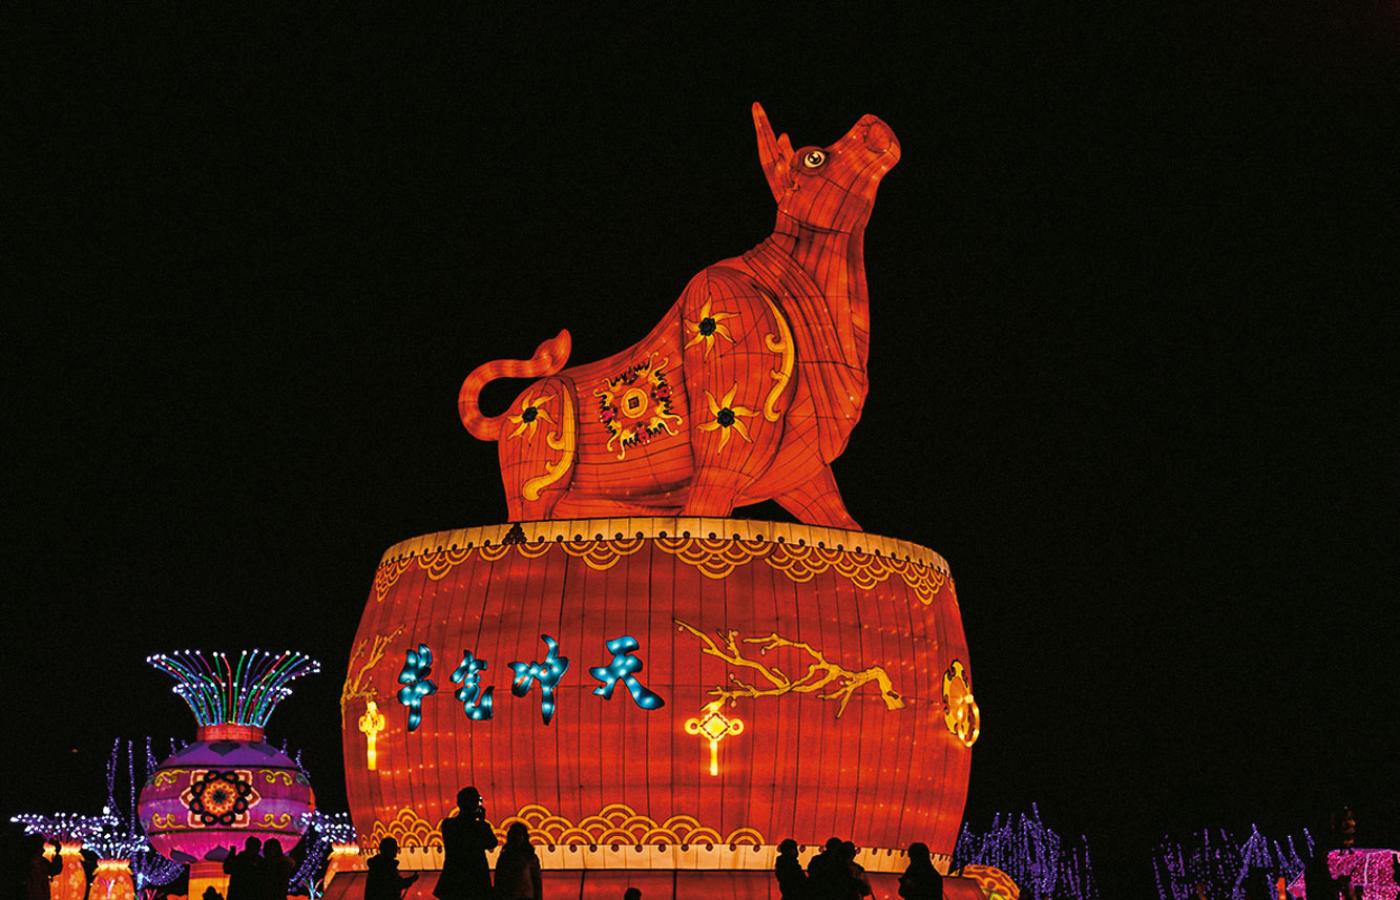 Chiński Nowy Rok pod znakiem Bawoła rozpoczął się 12 lutego.